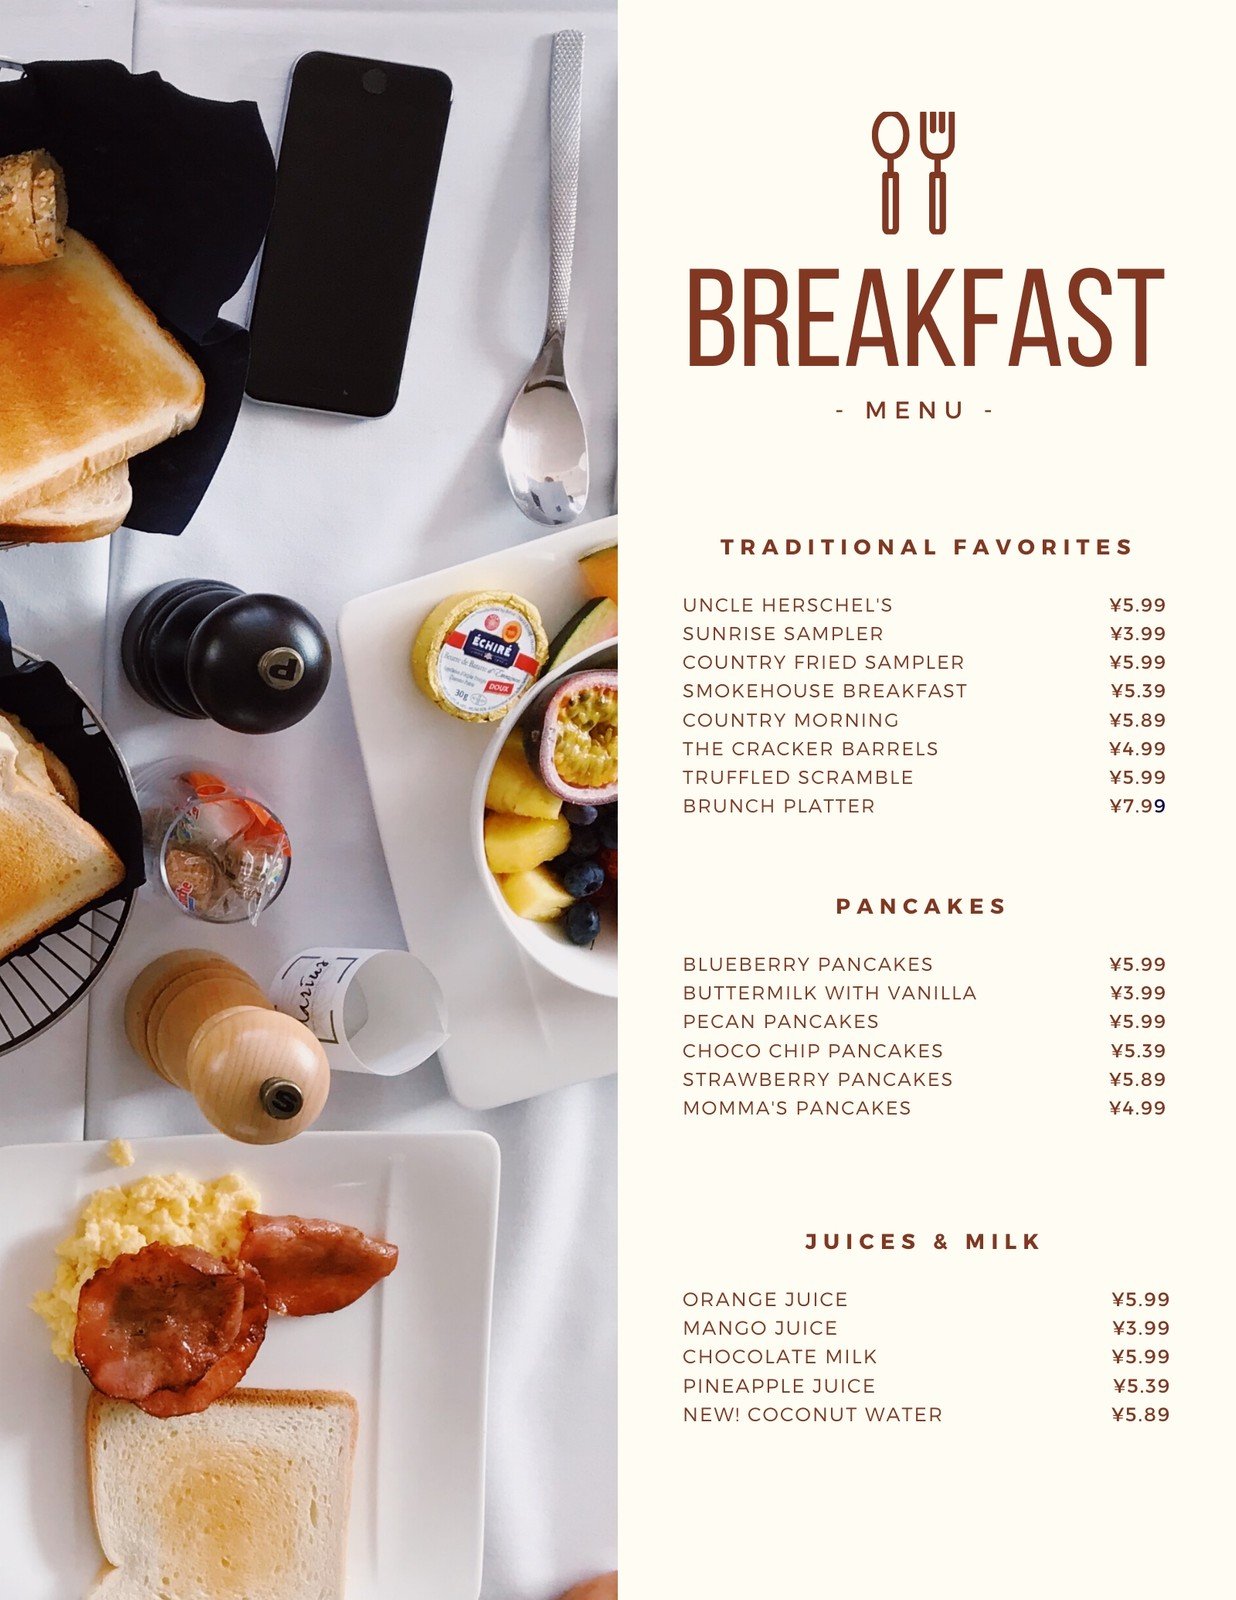 breakfast menu background design